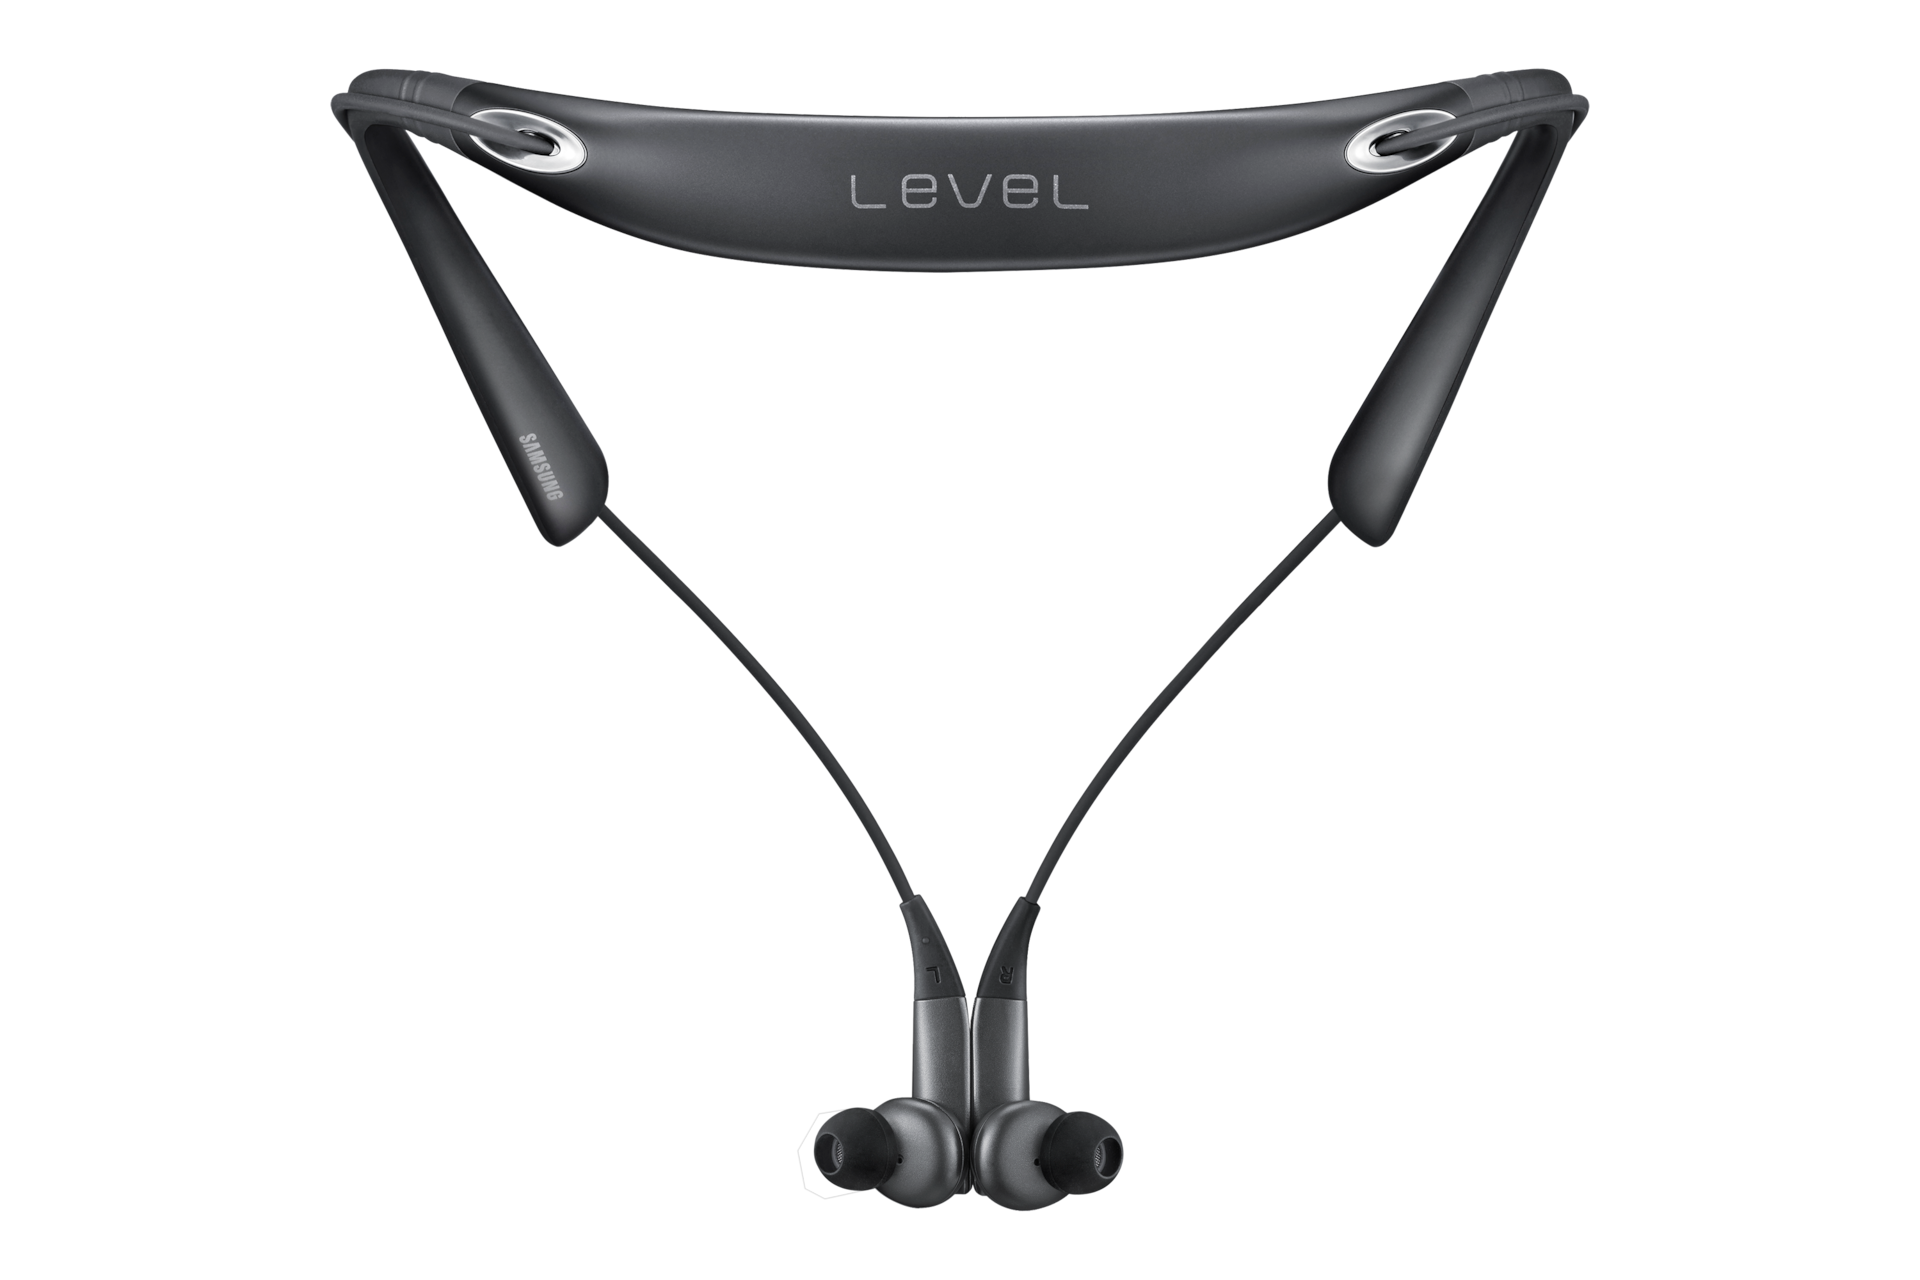 Level U Pro (Bluetooth Headset) | EO-BN920CBEGWW | Samsung Hong Kong